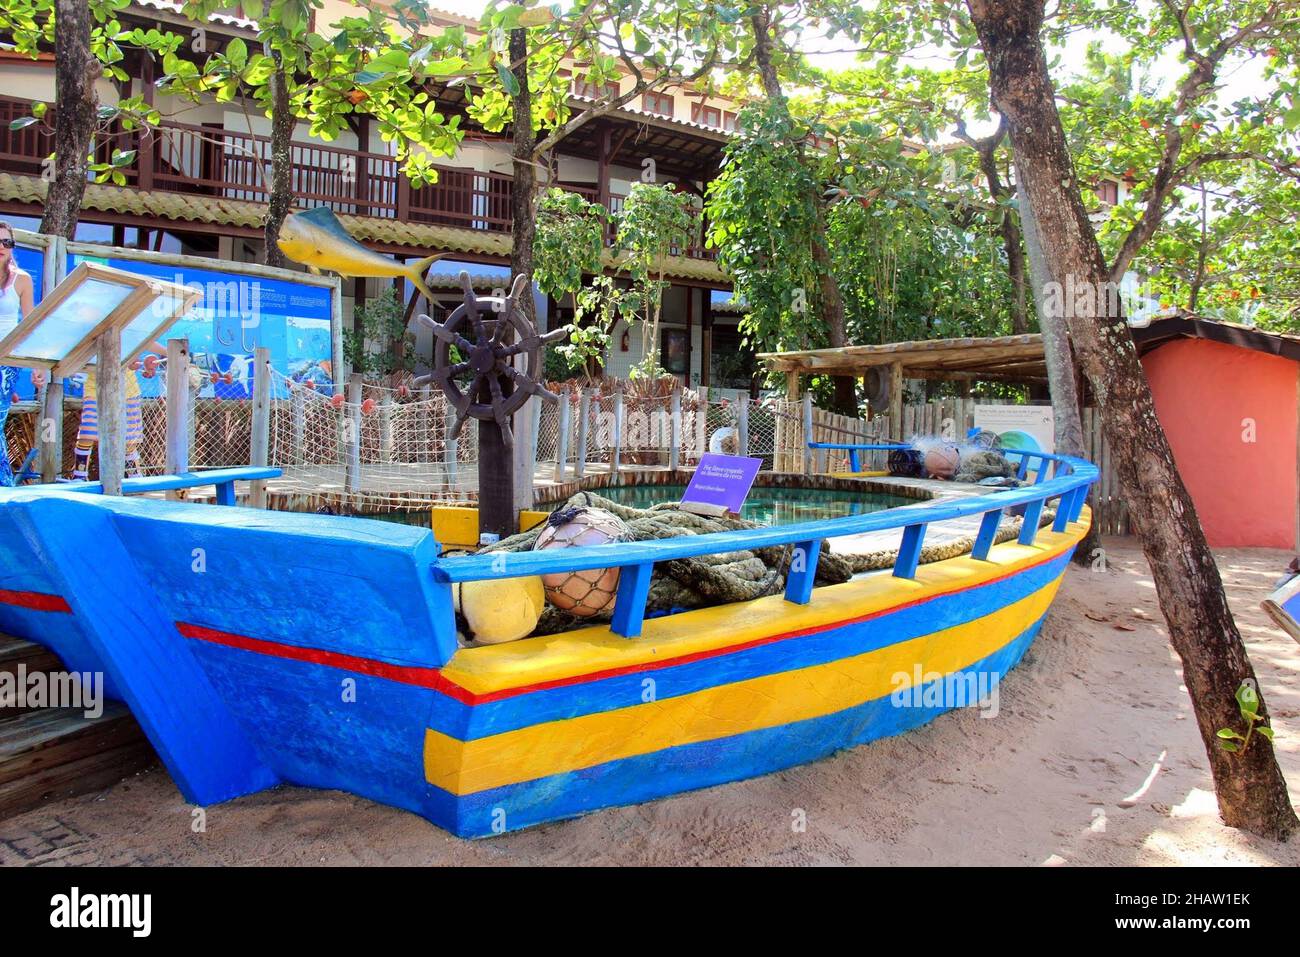 Tamar Project: Boot auf dem Display, um auf die Gefahren für Schildkröten aufmerksam zu machen. Praia do Forte, Mata de São João - Bahia. Juli 2013 Stockfoto